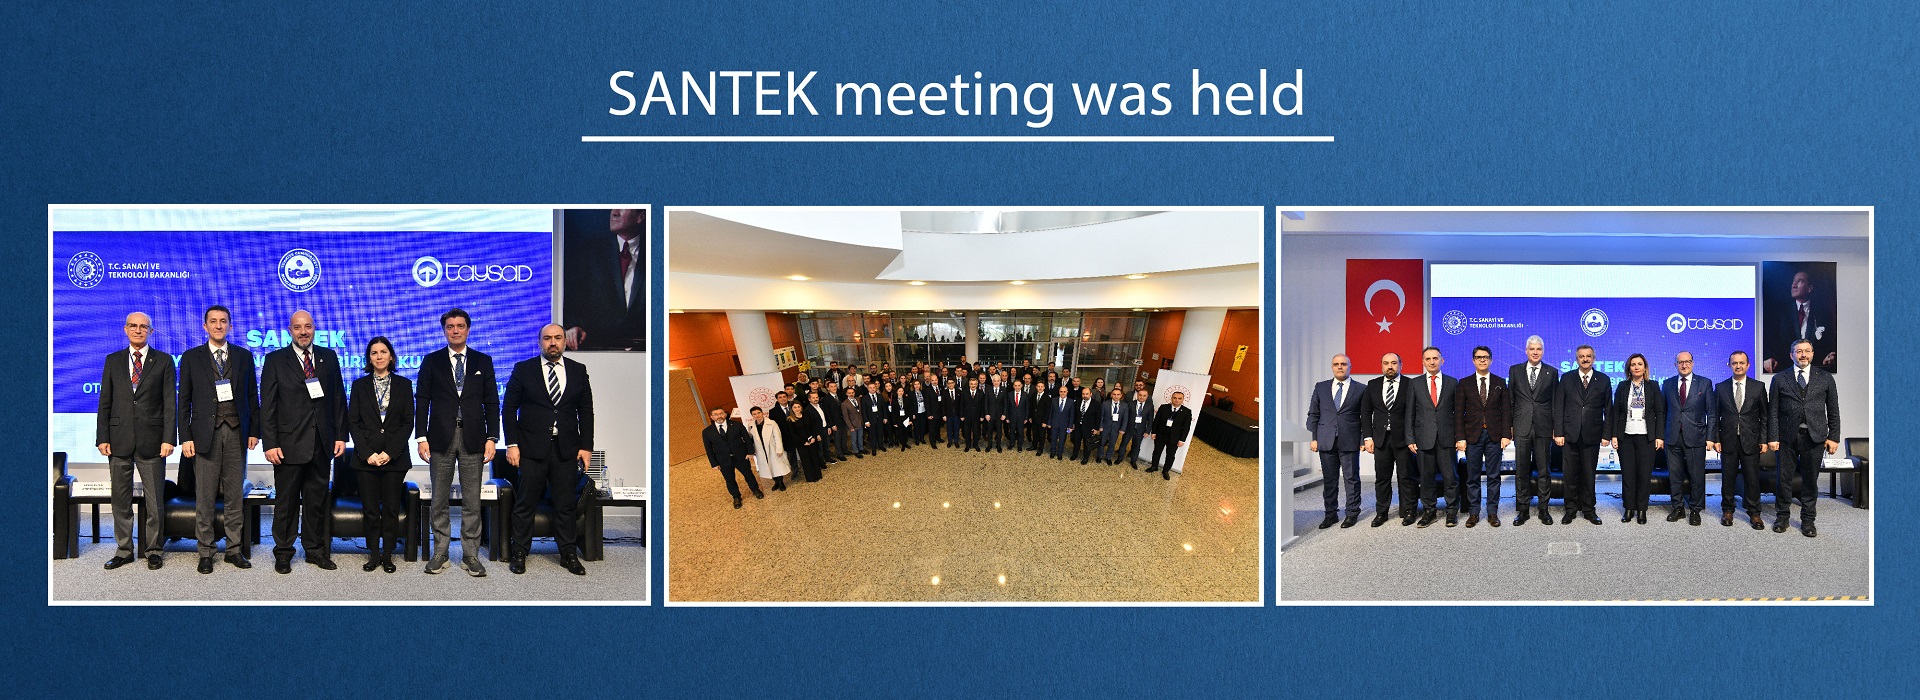 SANTEK meeting was held